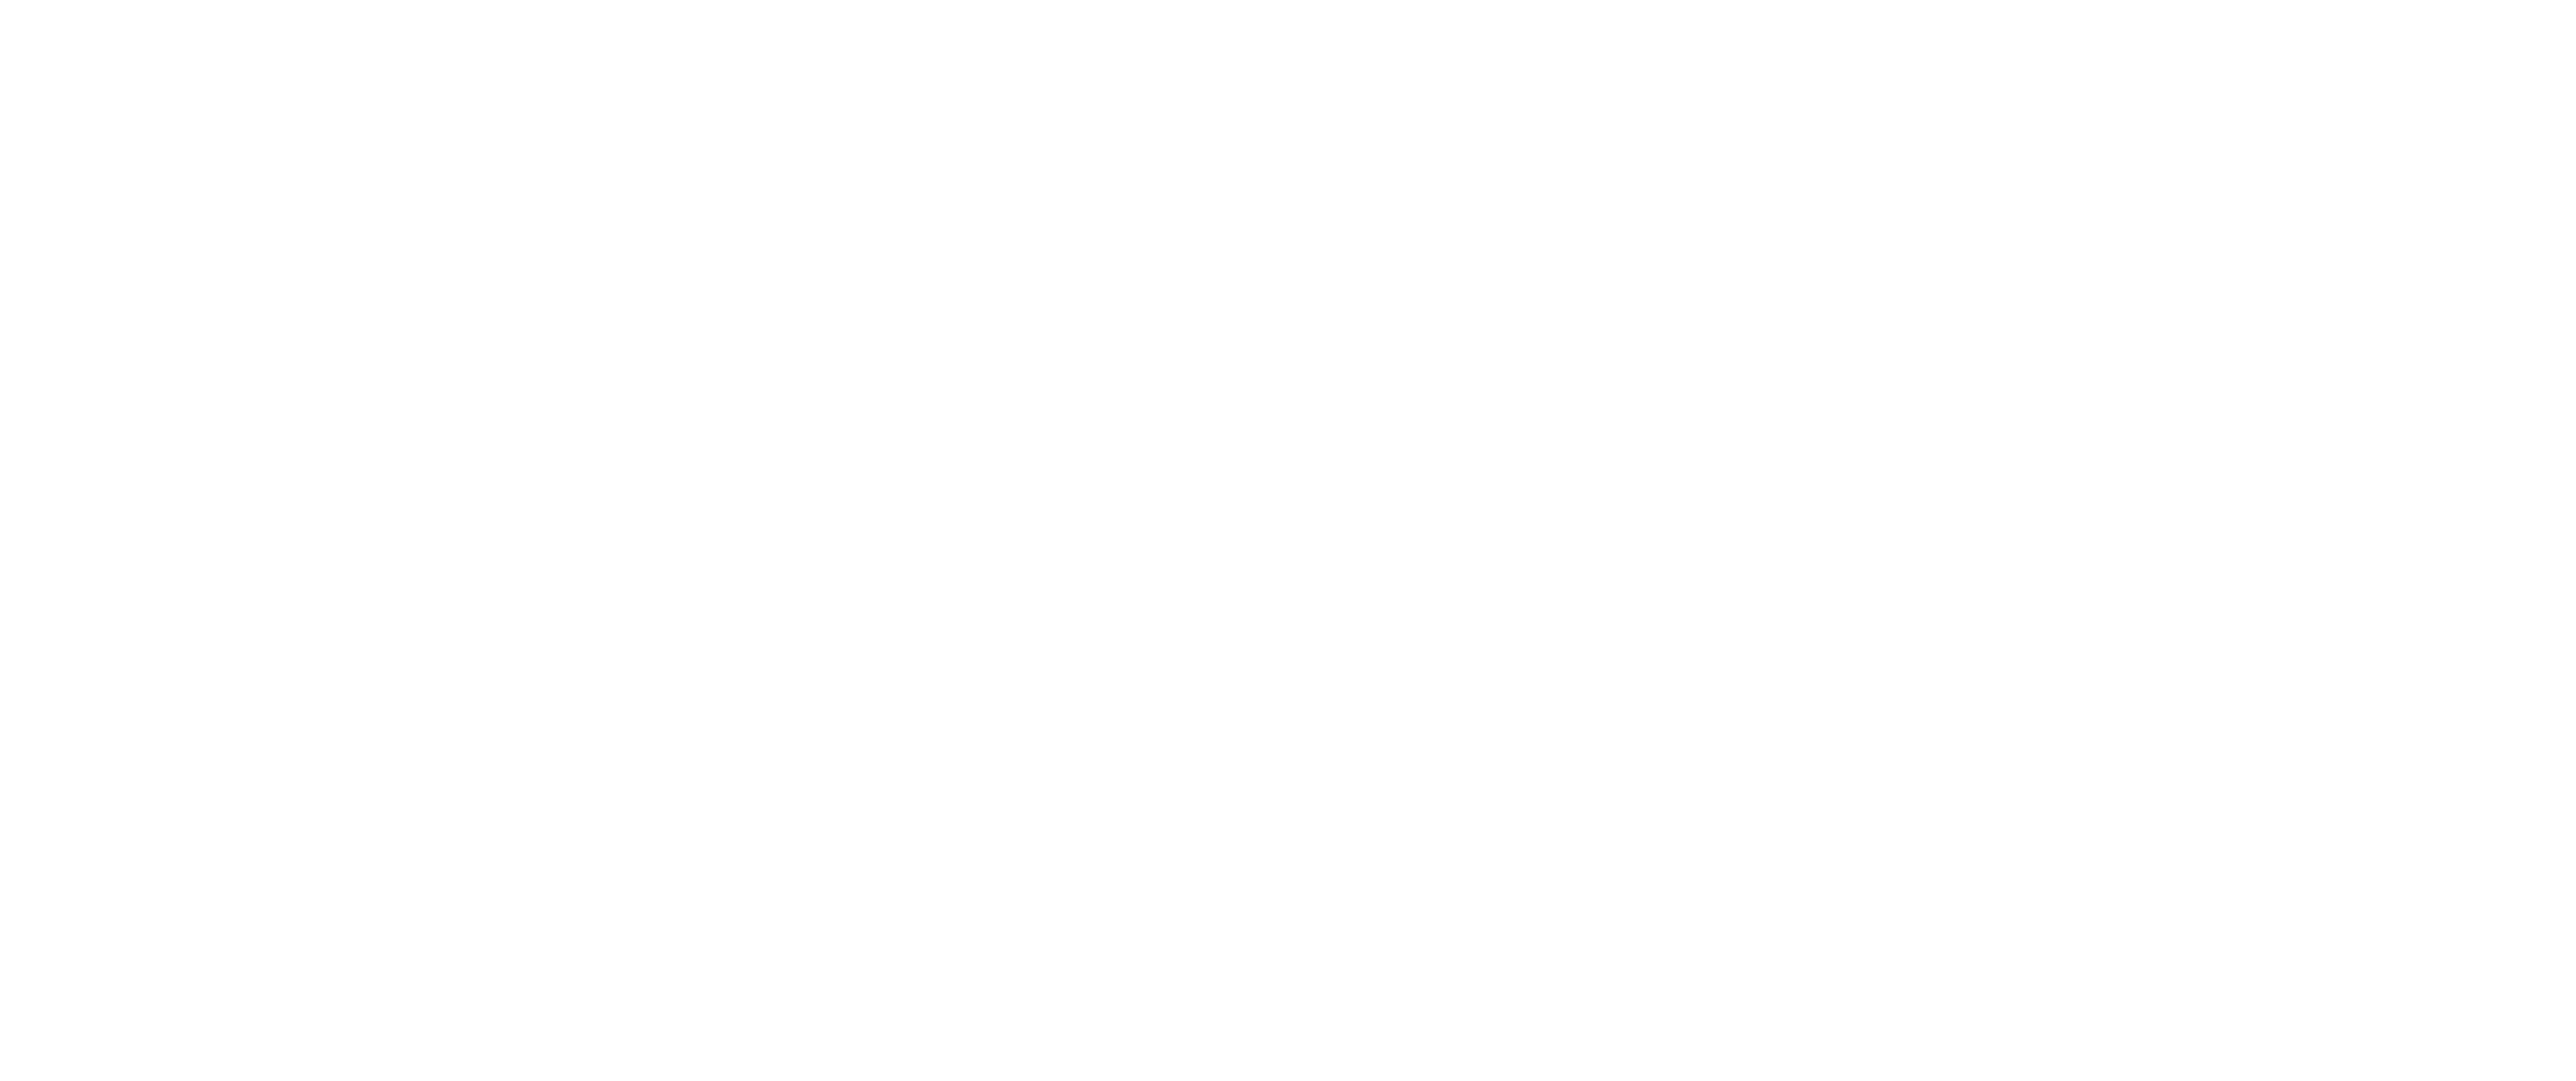 Chrystel orsatti - designer